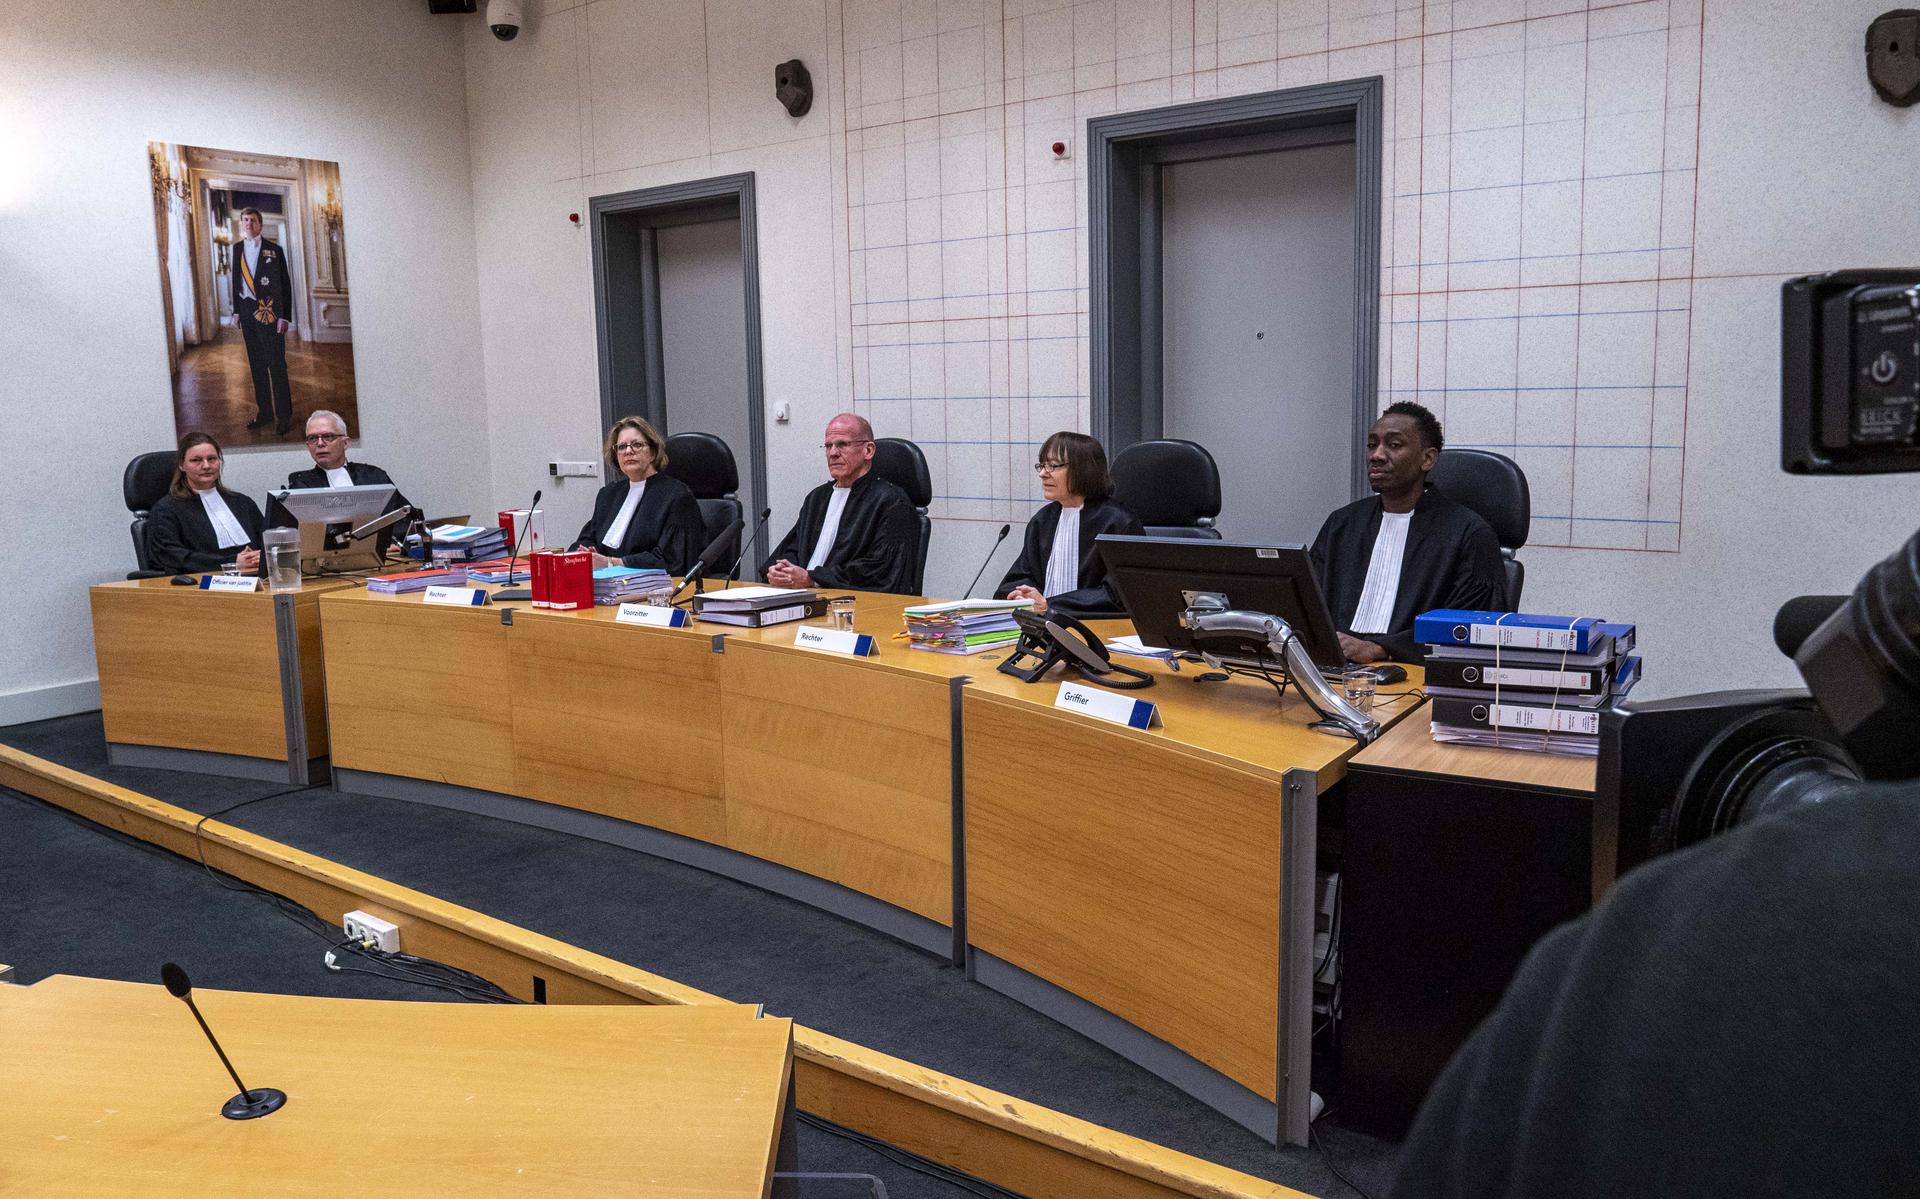 De drie rechters (midden zit voorzitter Herman Fransen) aan de pro forma Ruinerwold.